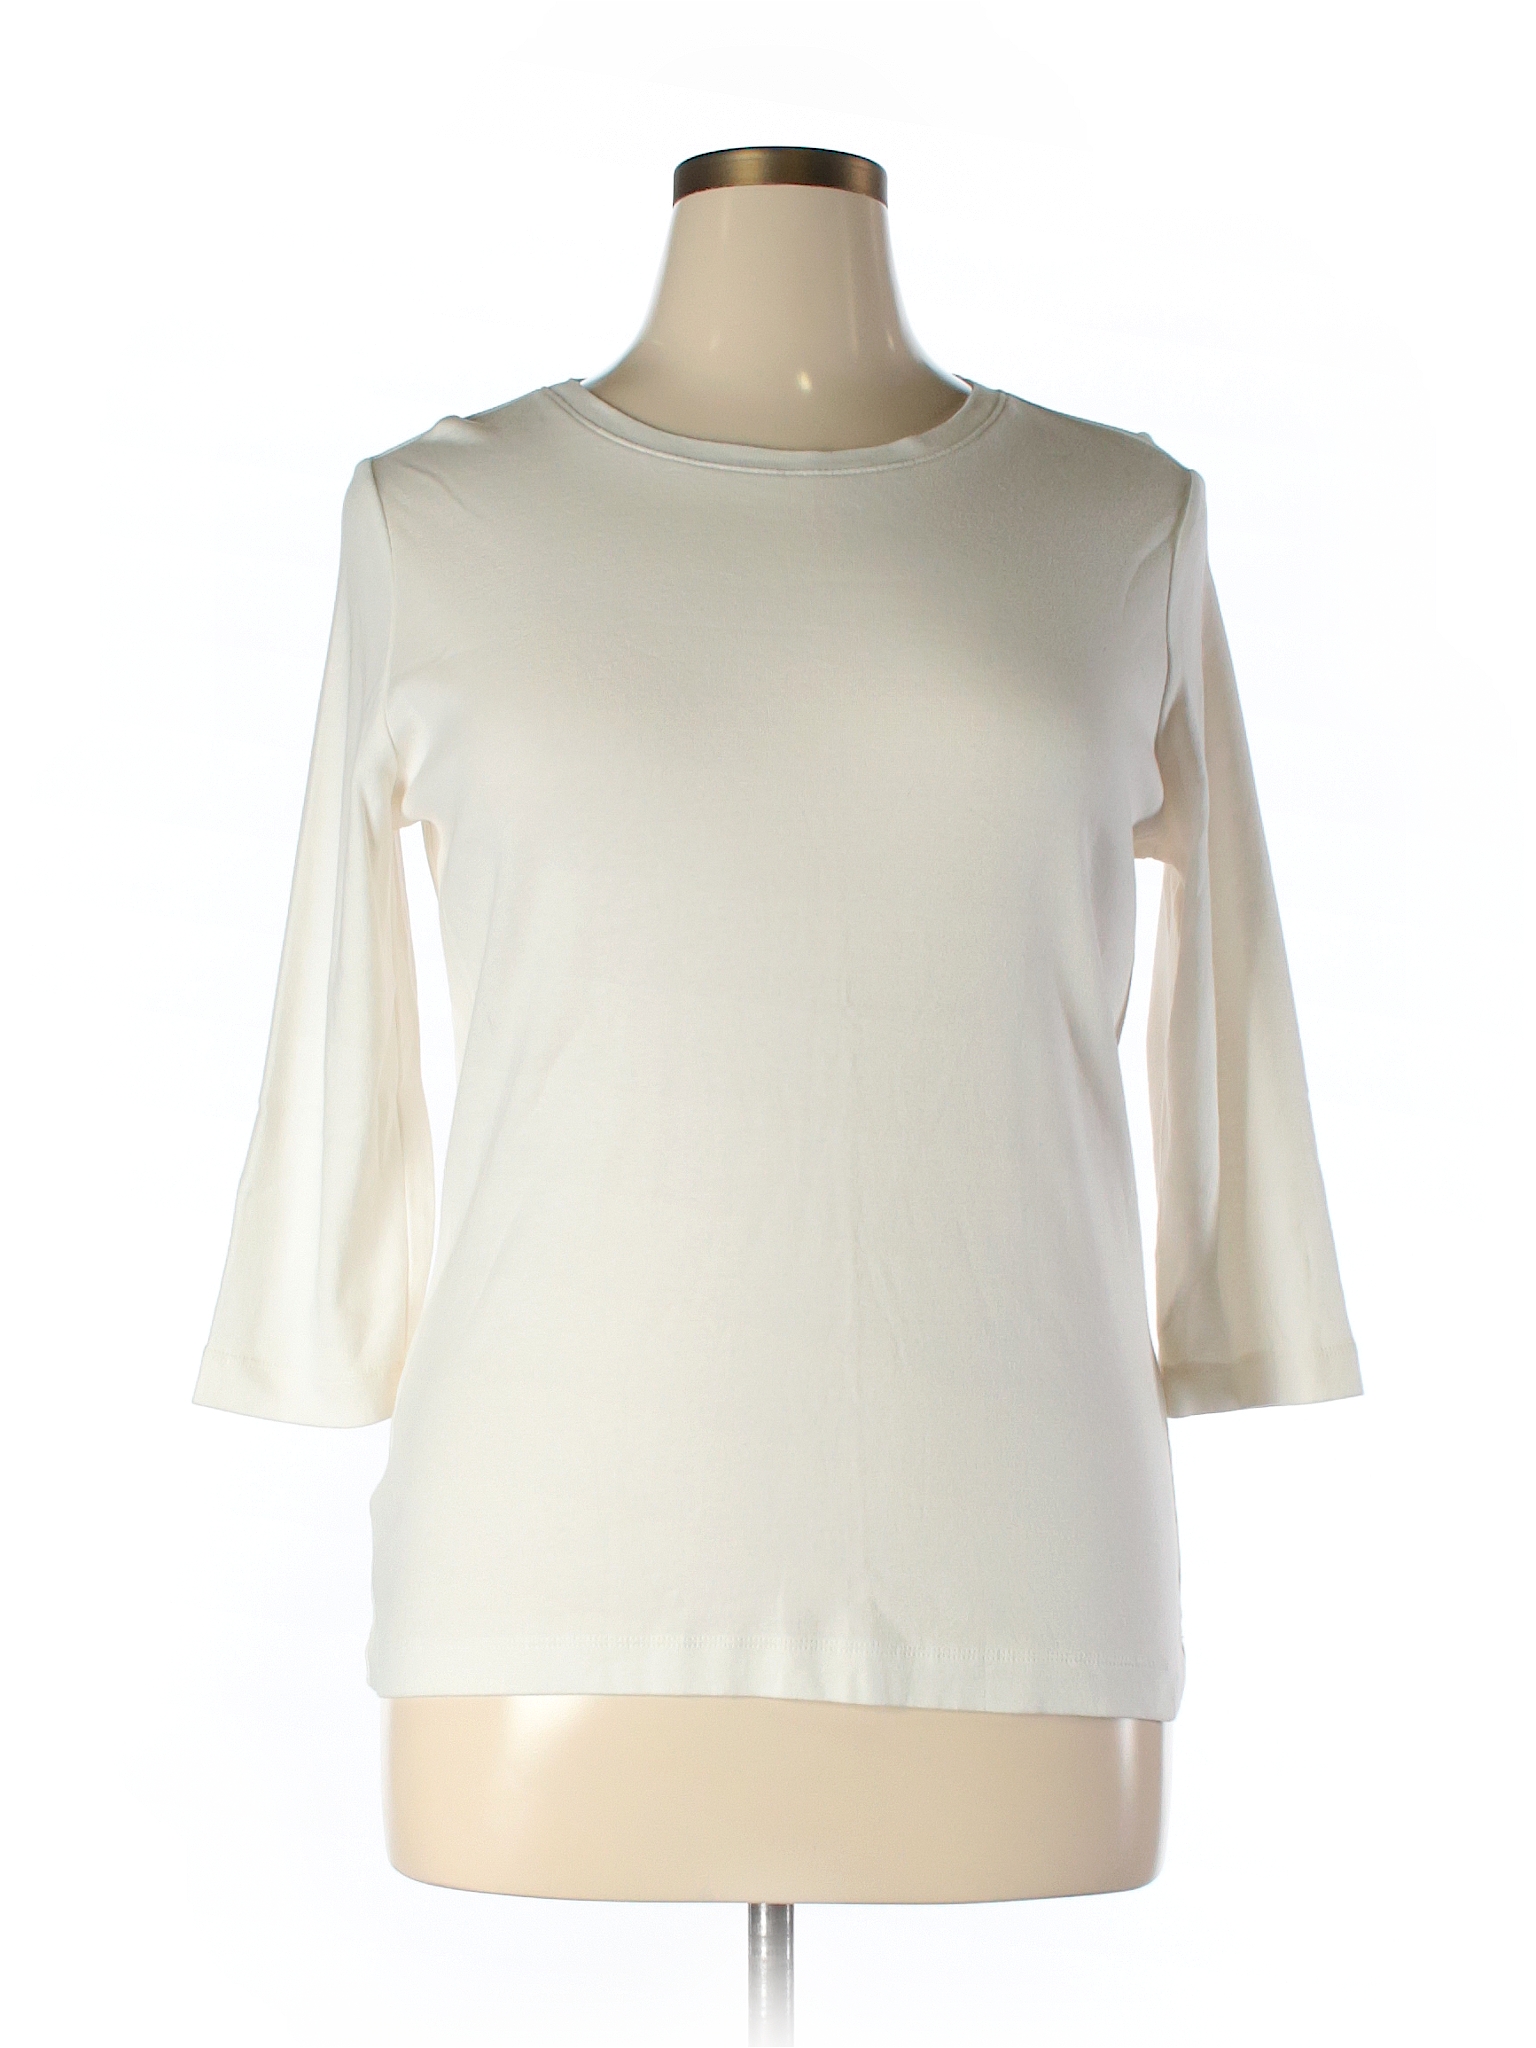 Eddie Bauer 100% Cotton Solid Ivory 3/4 Sleeve T-Shirt Size XL - 68% ...